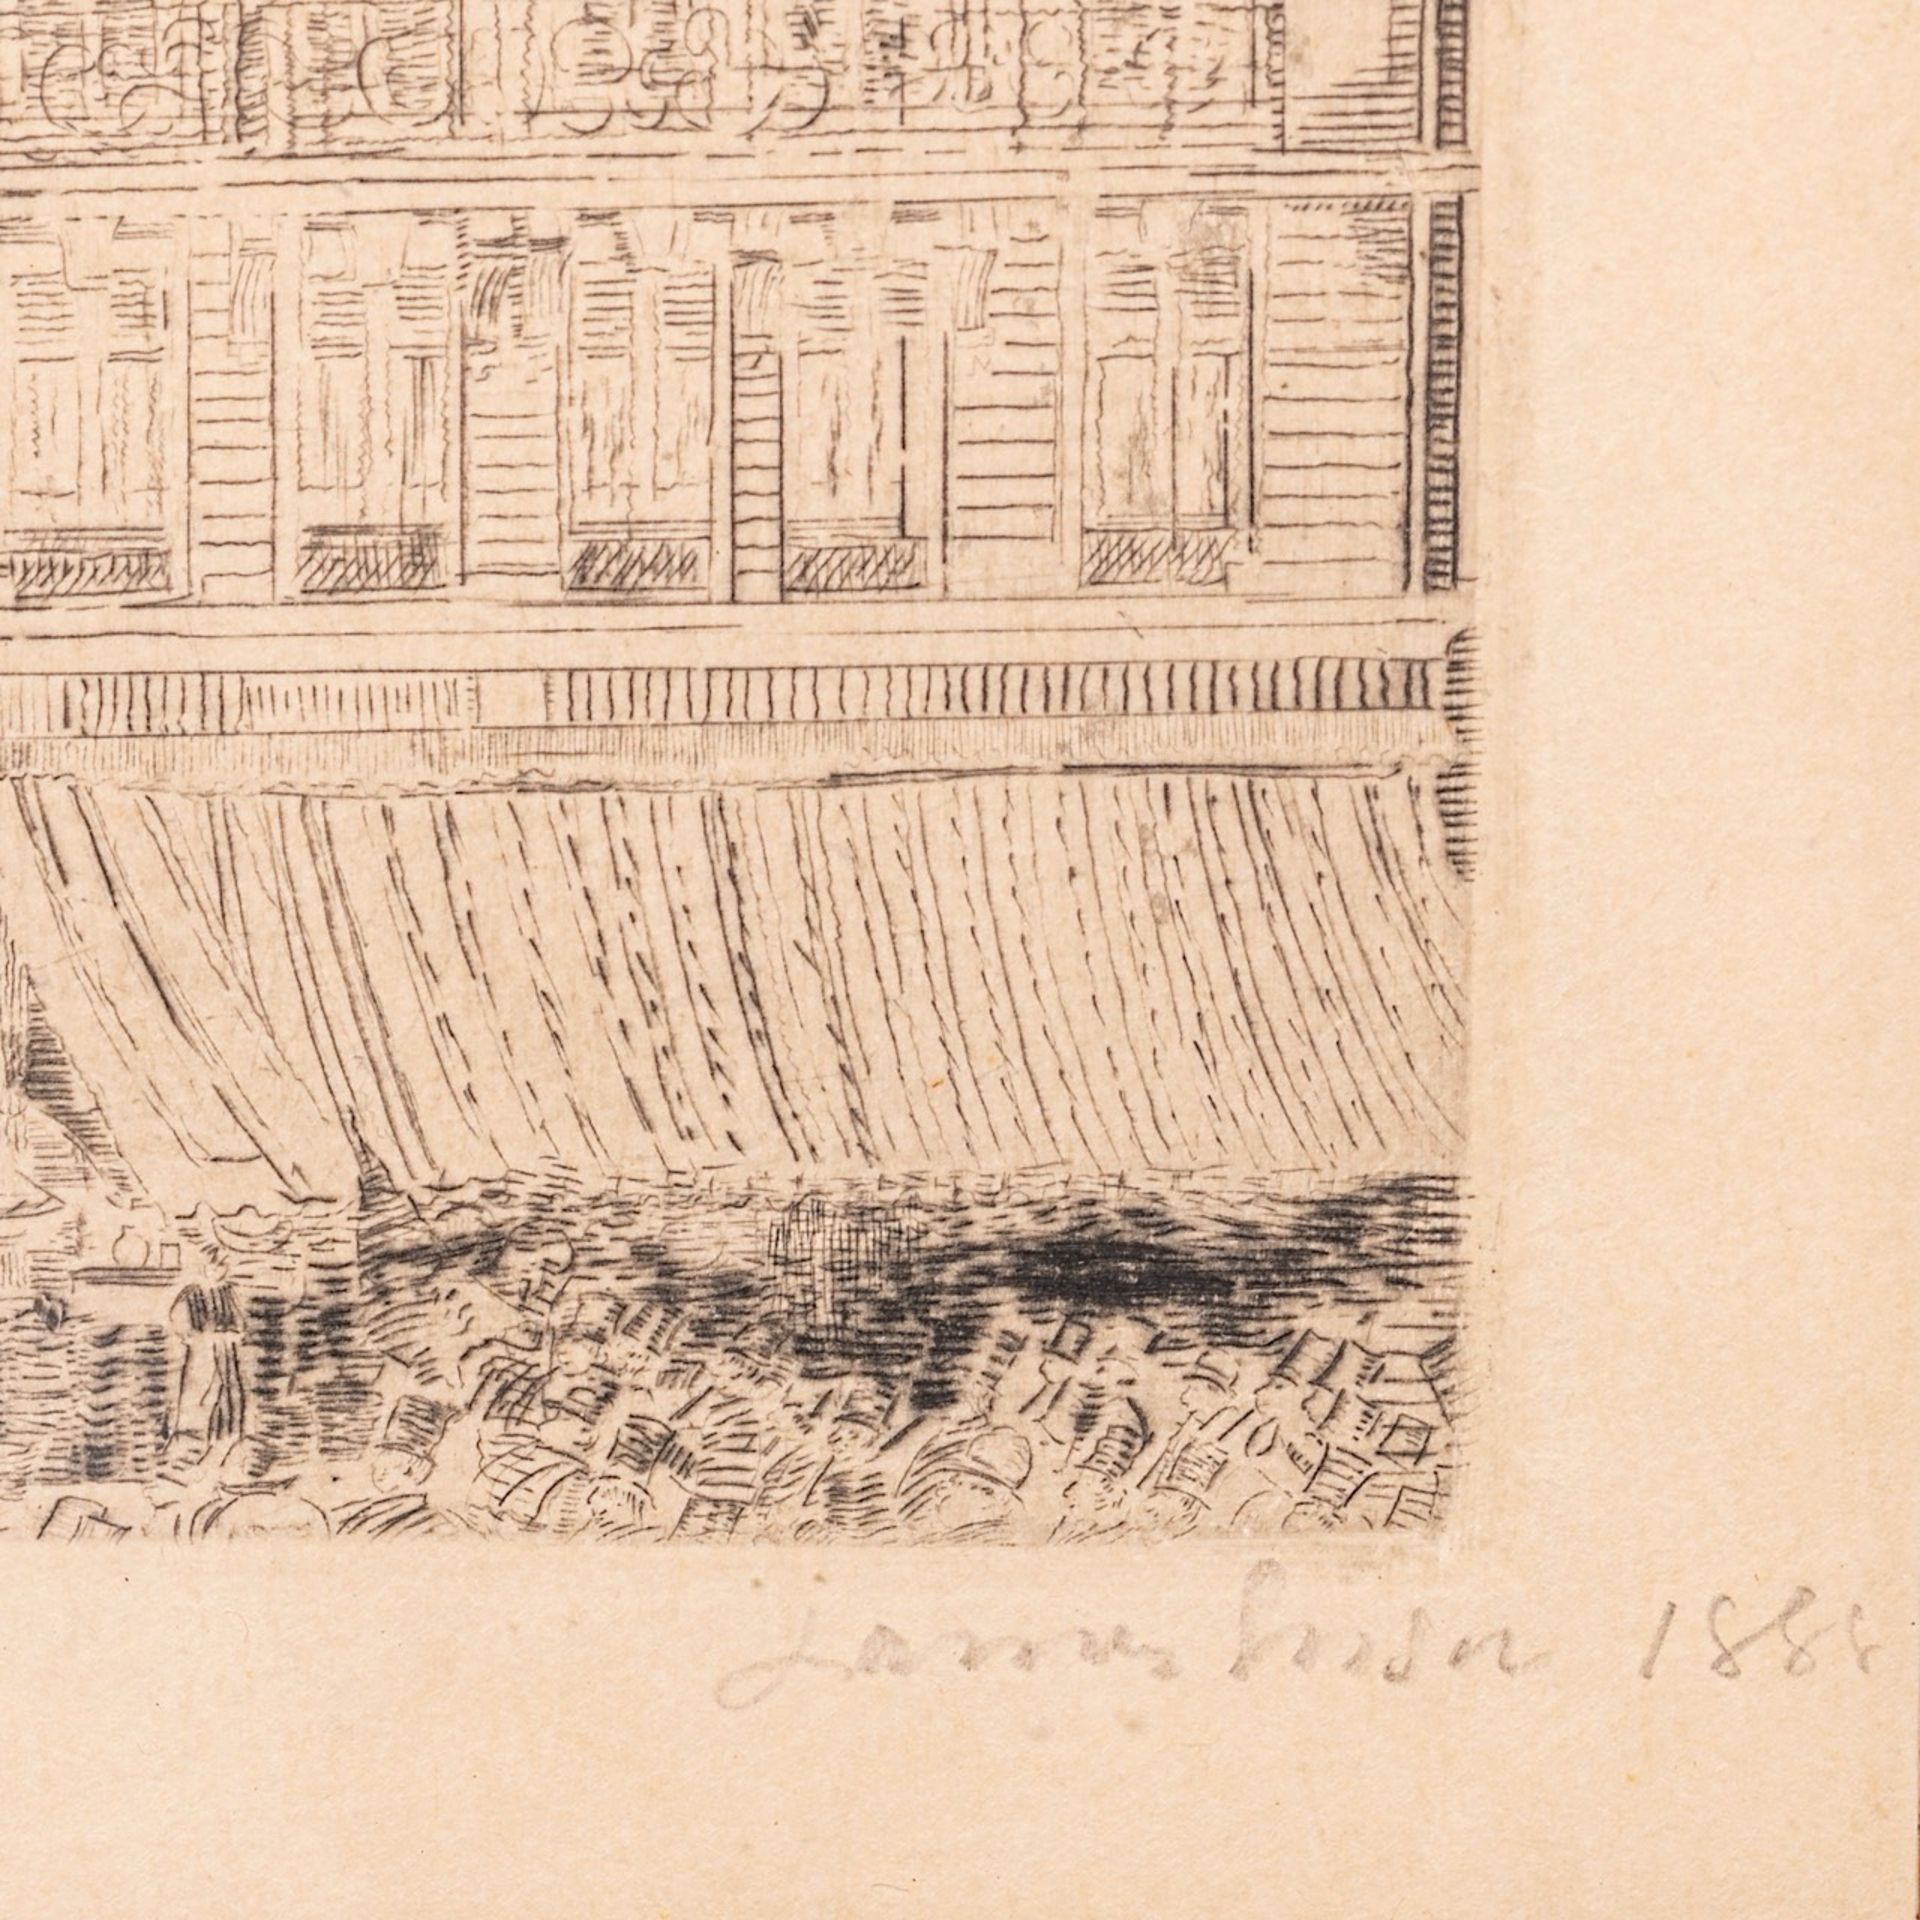 James Ensor (1860-1949), 'House on the Boulevard Anspach' ('Maison du Boulevard Anspach'), 1888, dry - Bild 4 aus 6